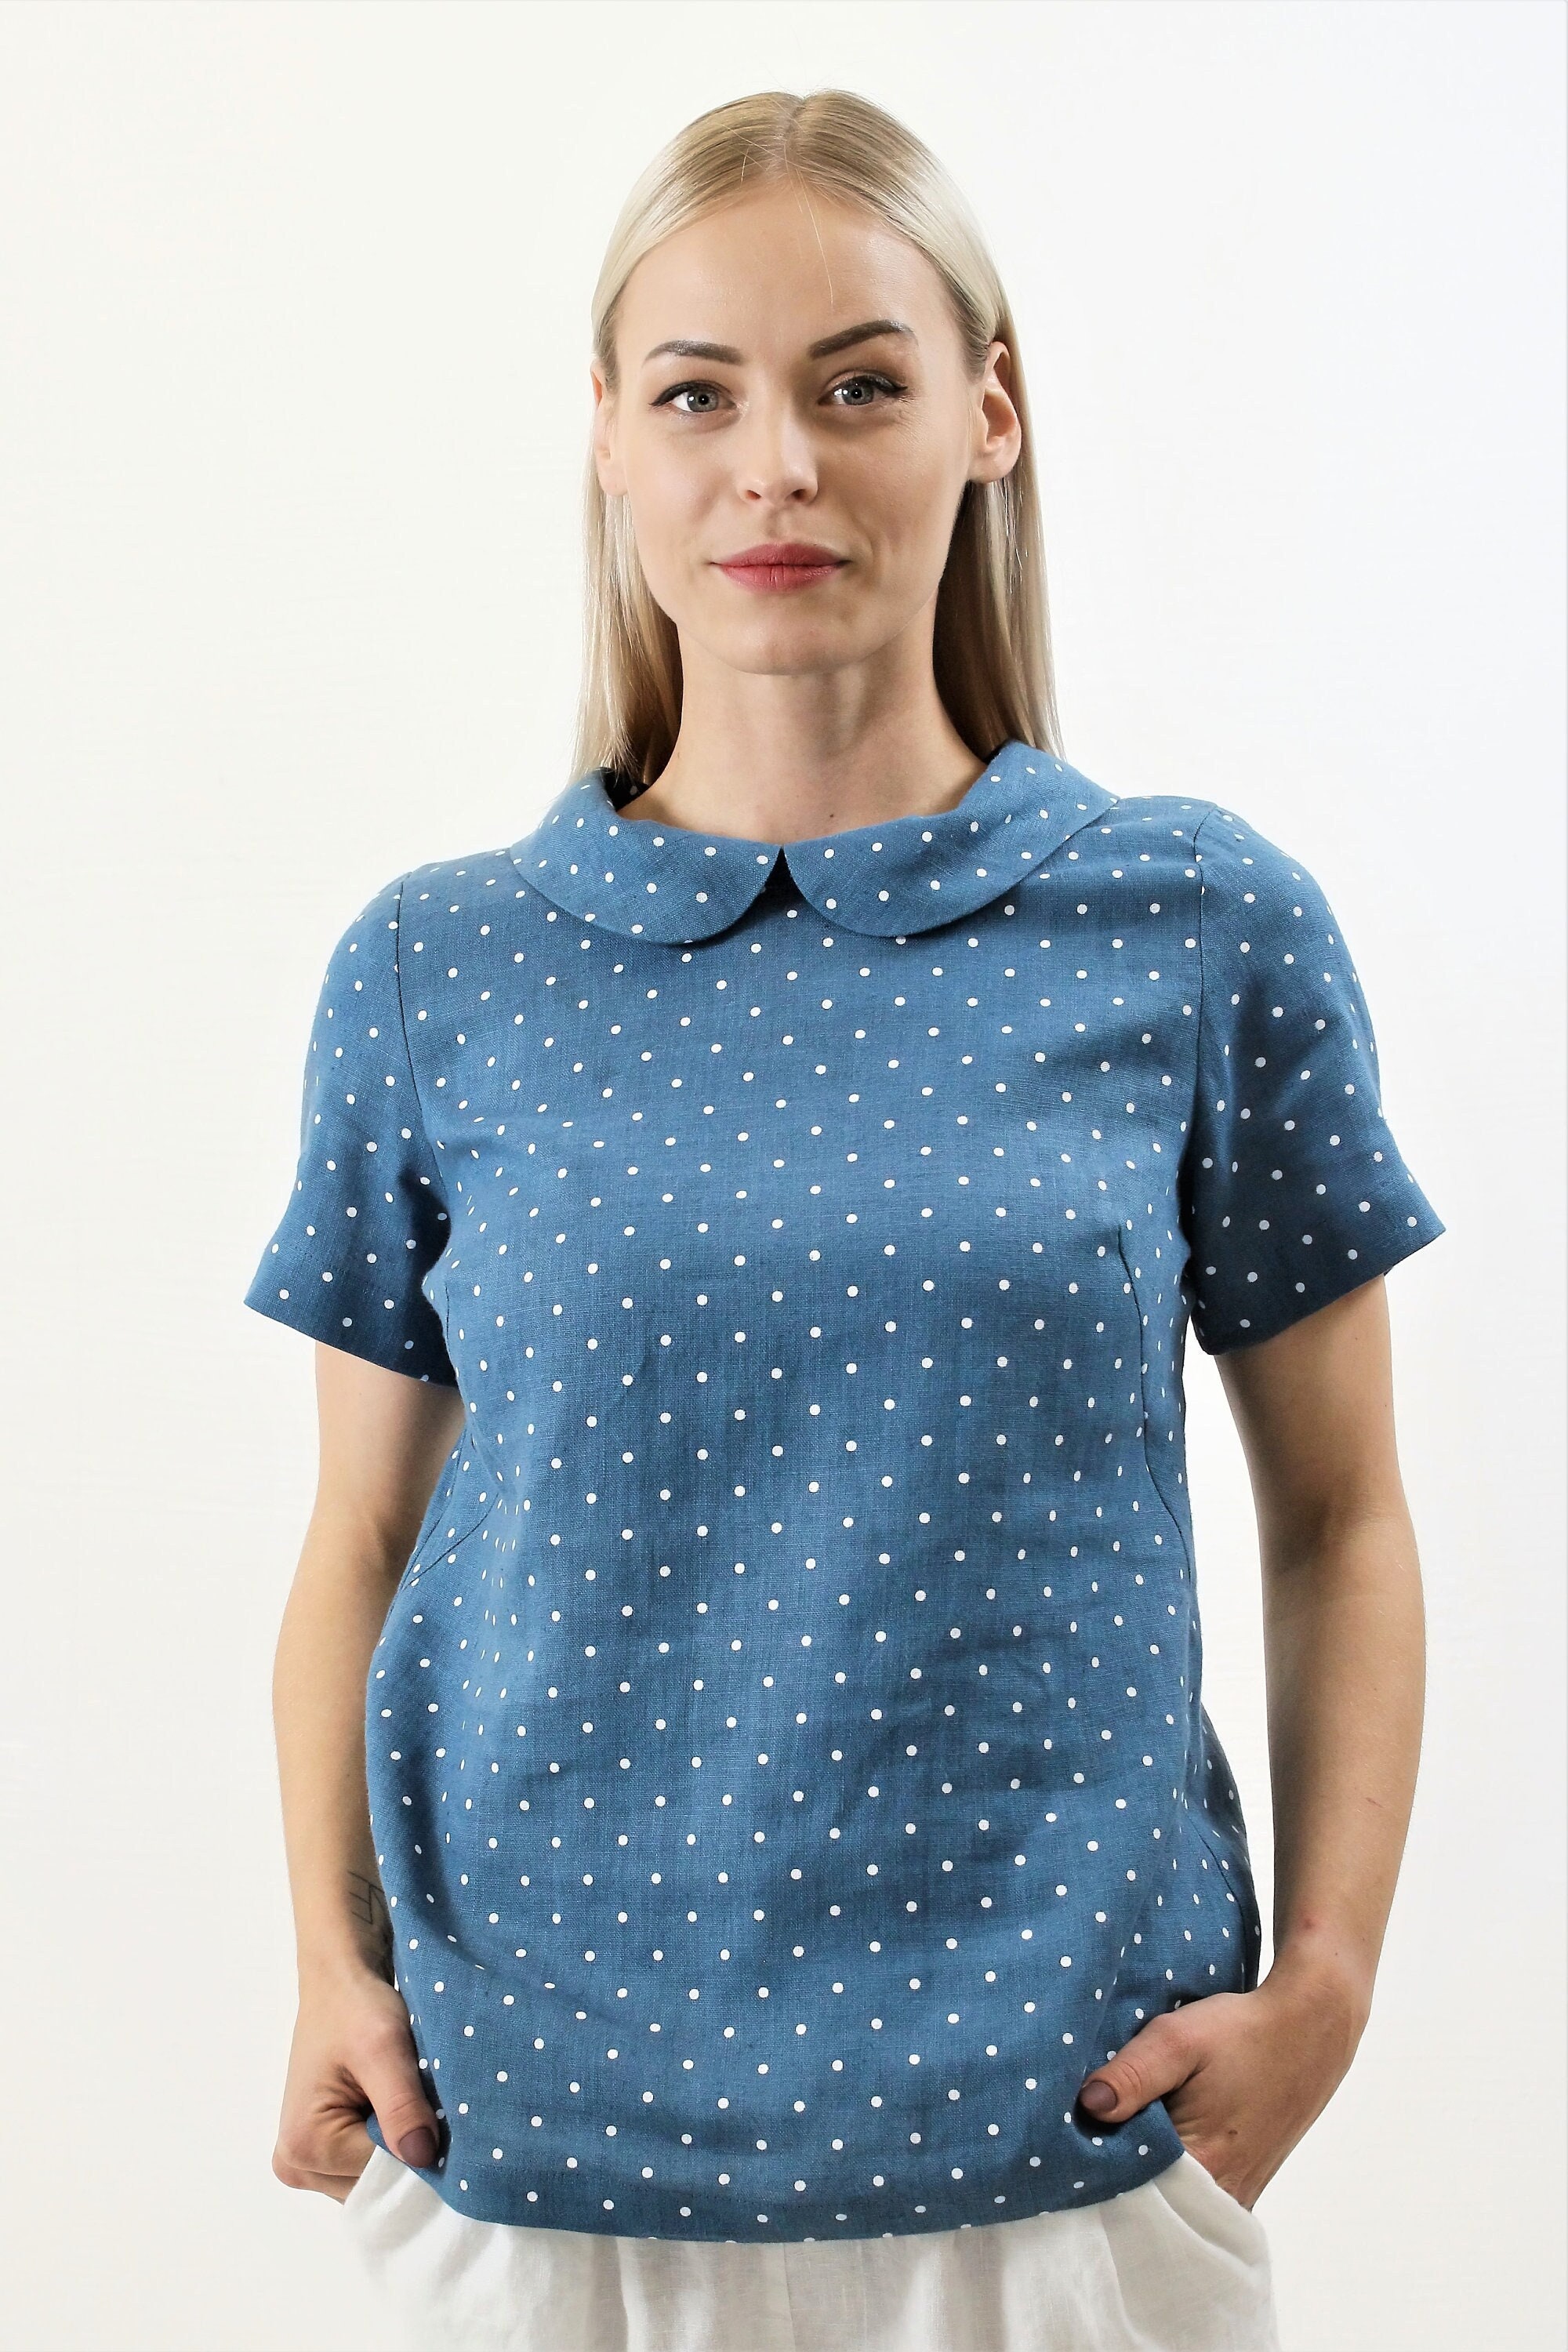 Linen T-Shirt 'Venice', Linen T-Shirt Women - Linenbee